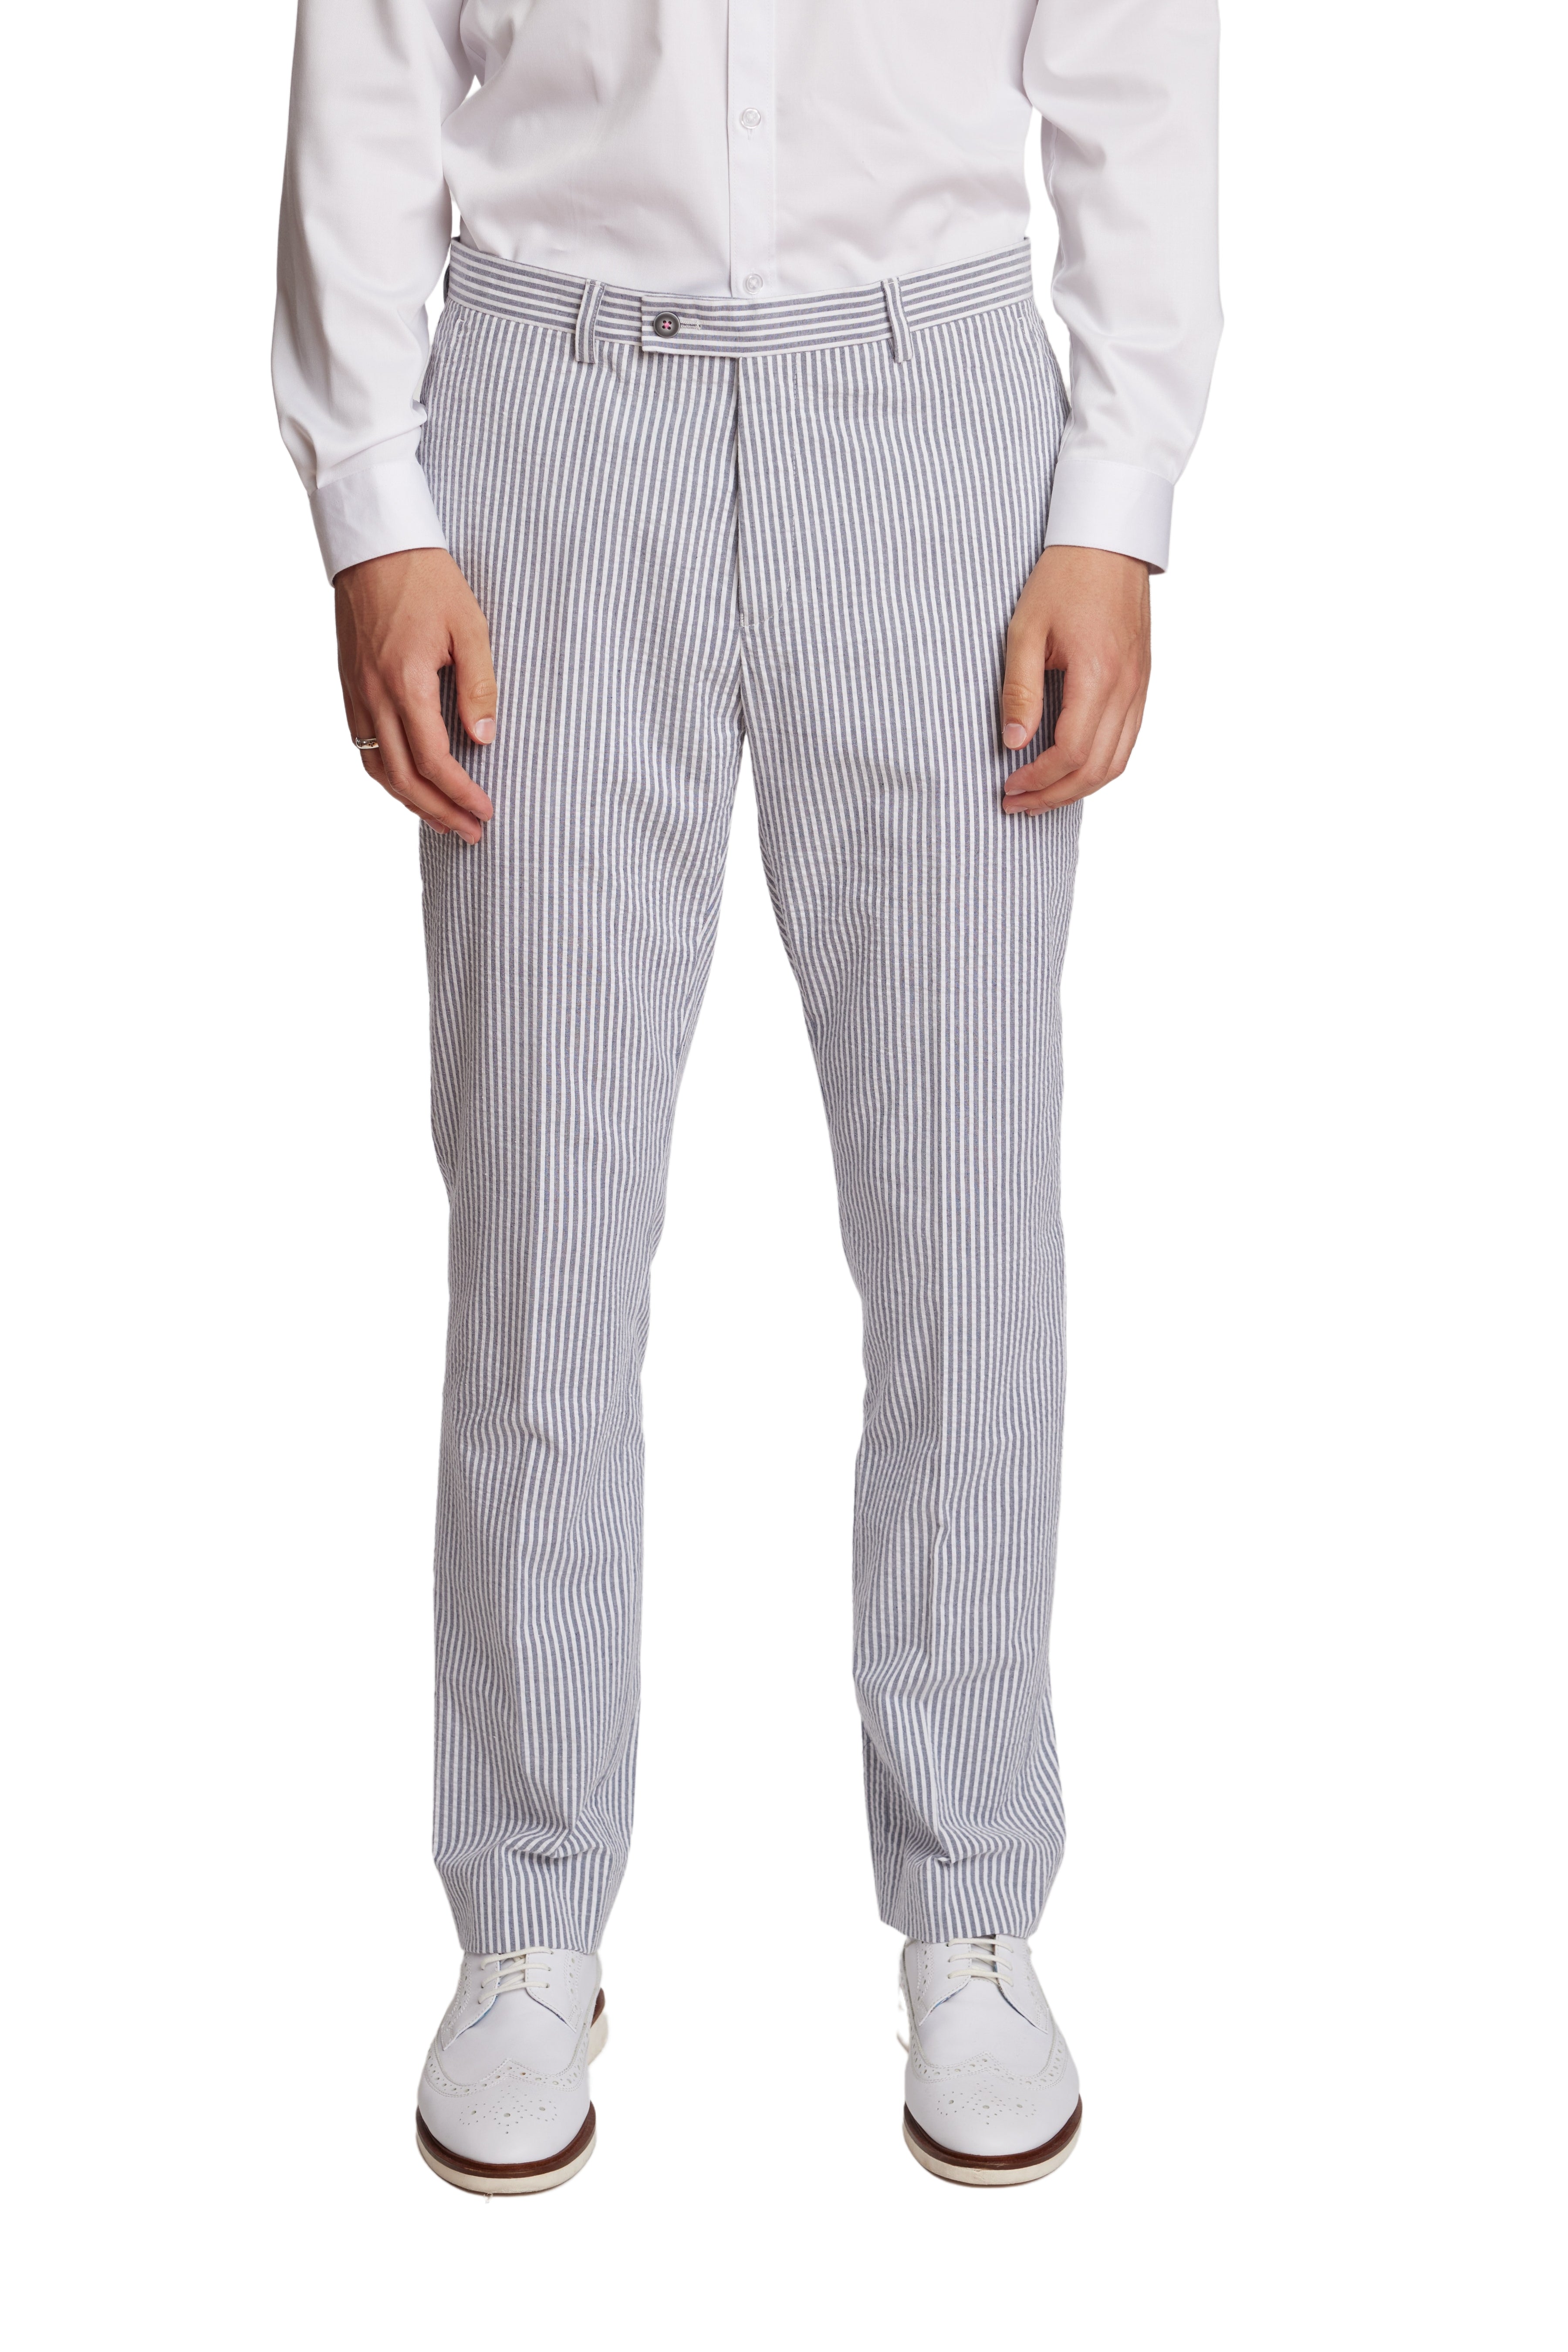 Downing Pants - slim - Grey & Wht Seersucker Stripes